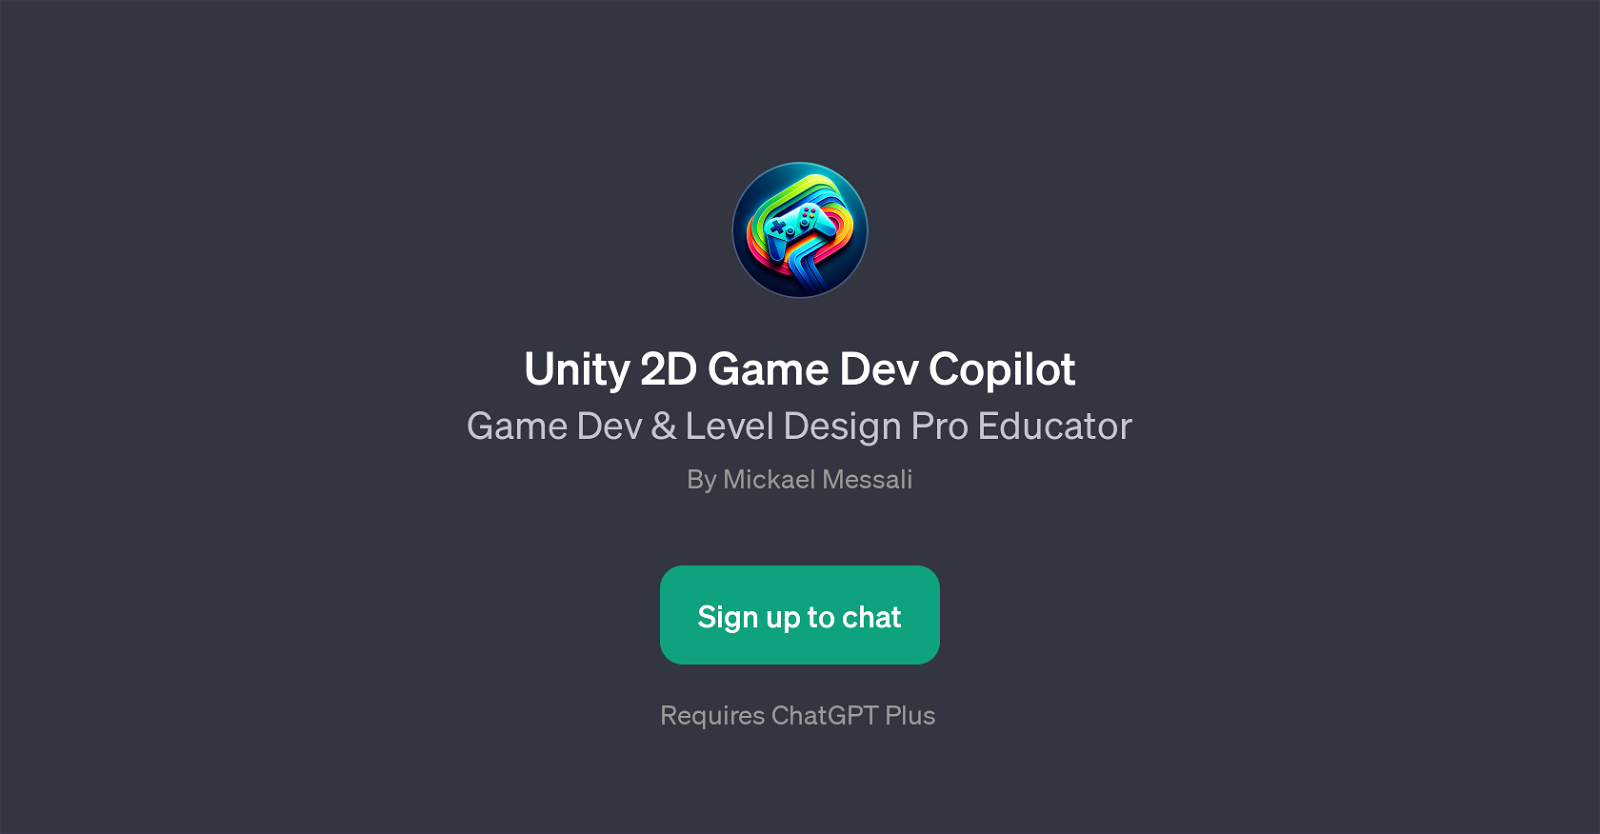 Unity 2D Game Dev Copilot website